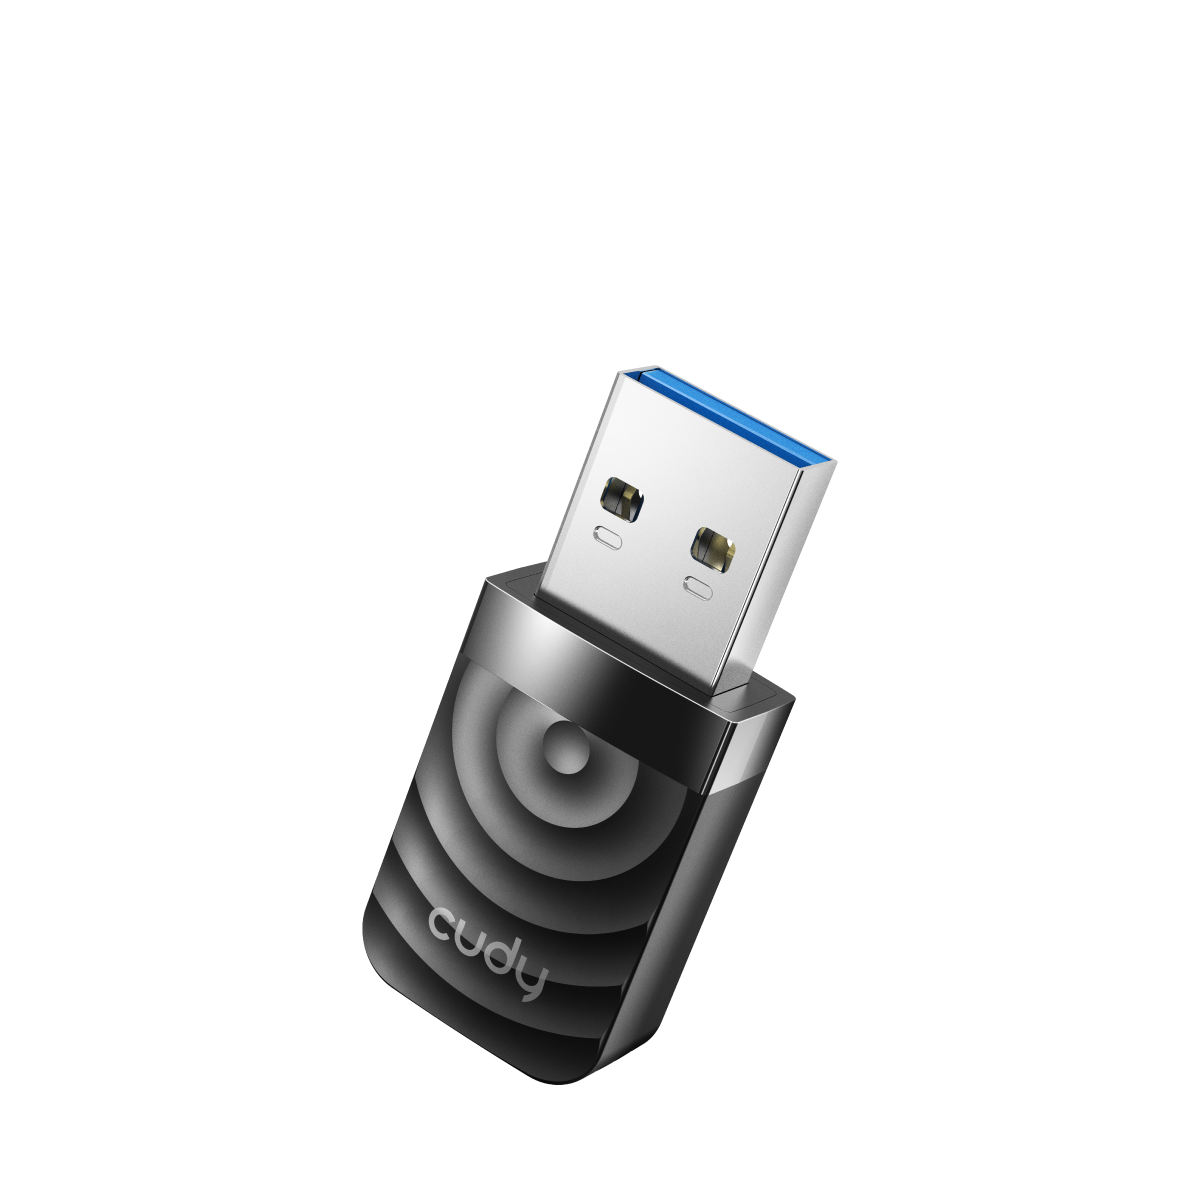 AC1300 Wi-Fi USB Adapter, WU1300S 1.0